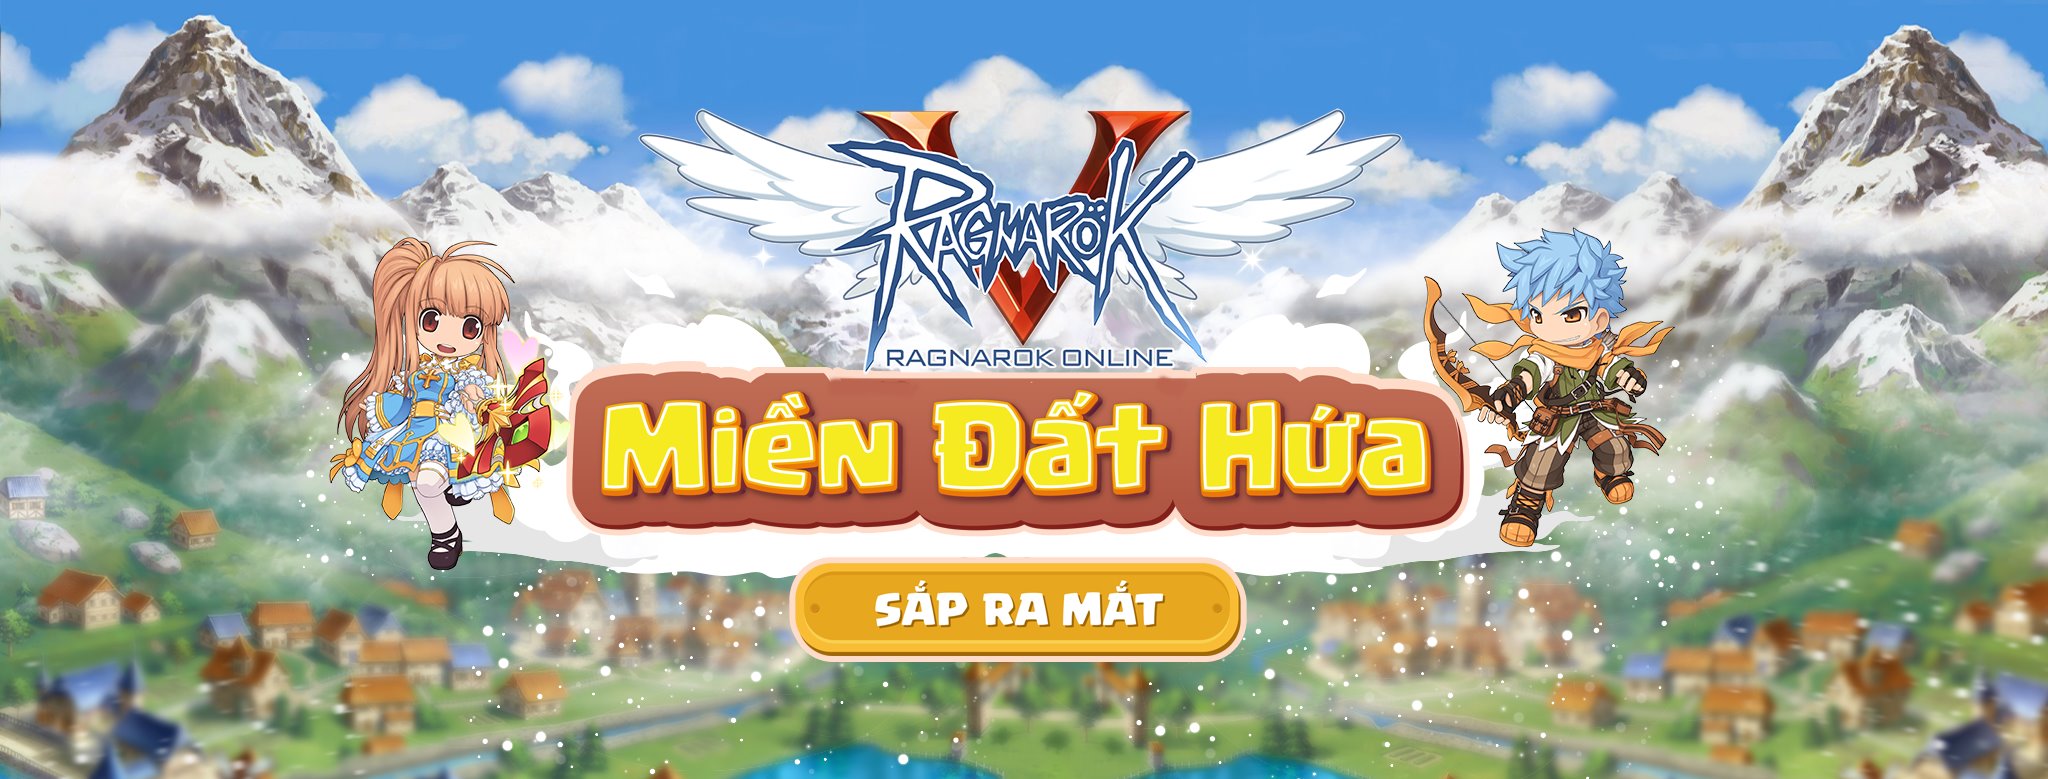 Ragnarok Online Việt Nam sắp được VTC Game phát hành cho game thủ